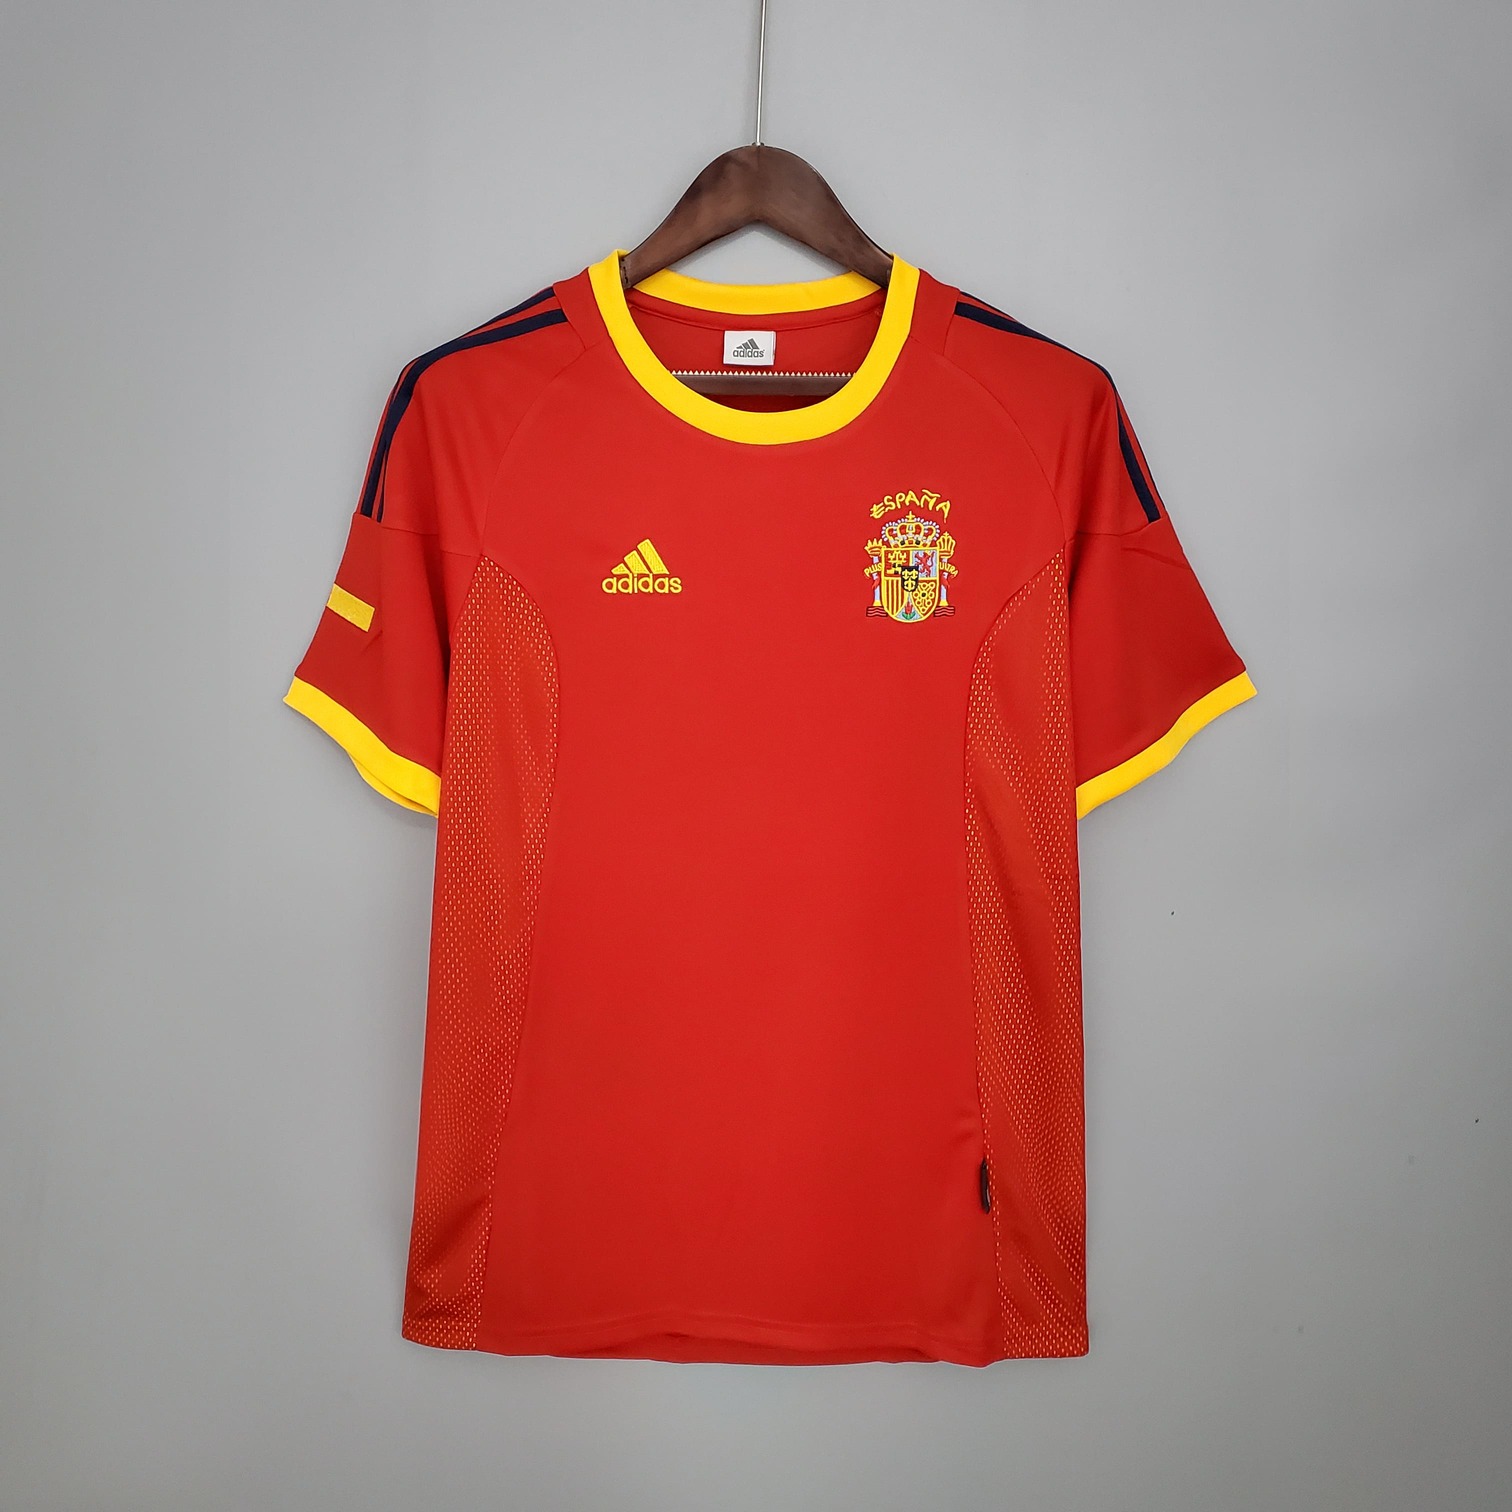 Camiseta de España 2002 home | Adidas - Peru FC